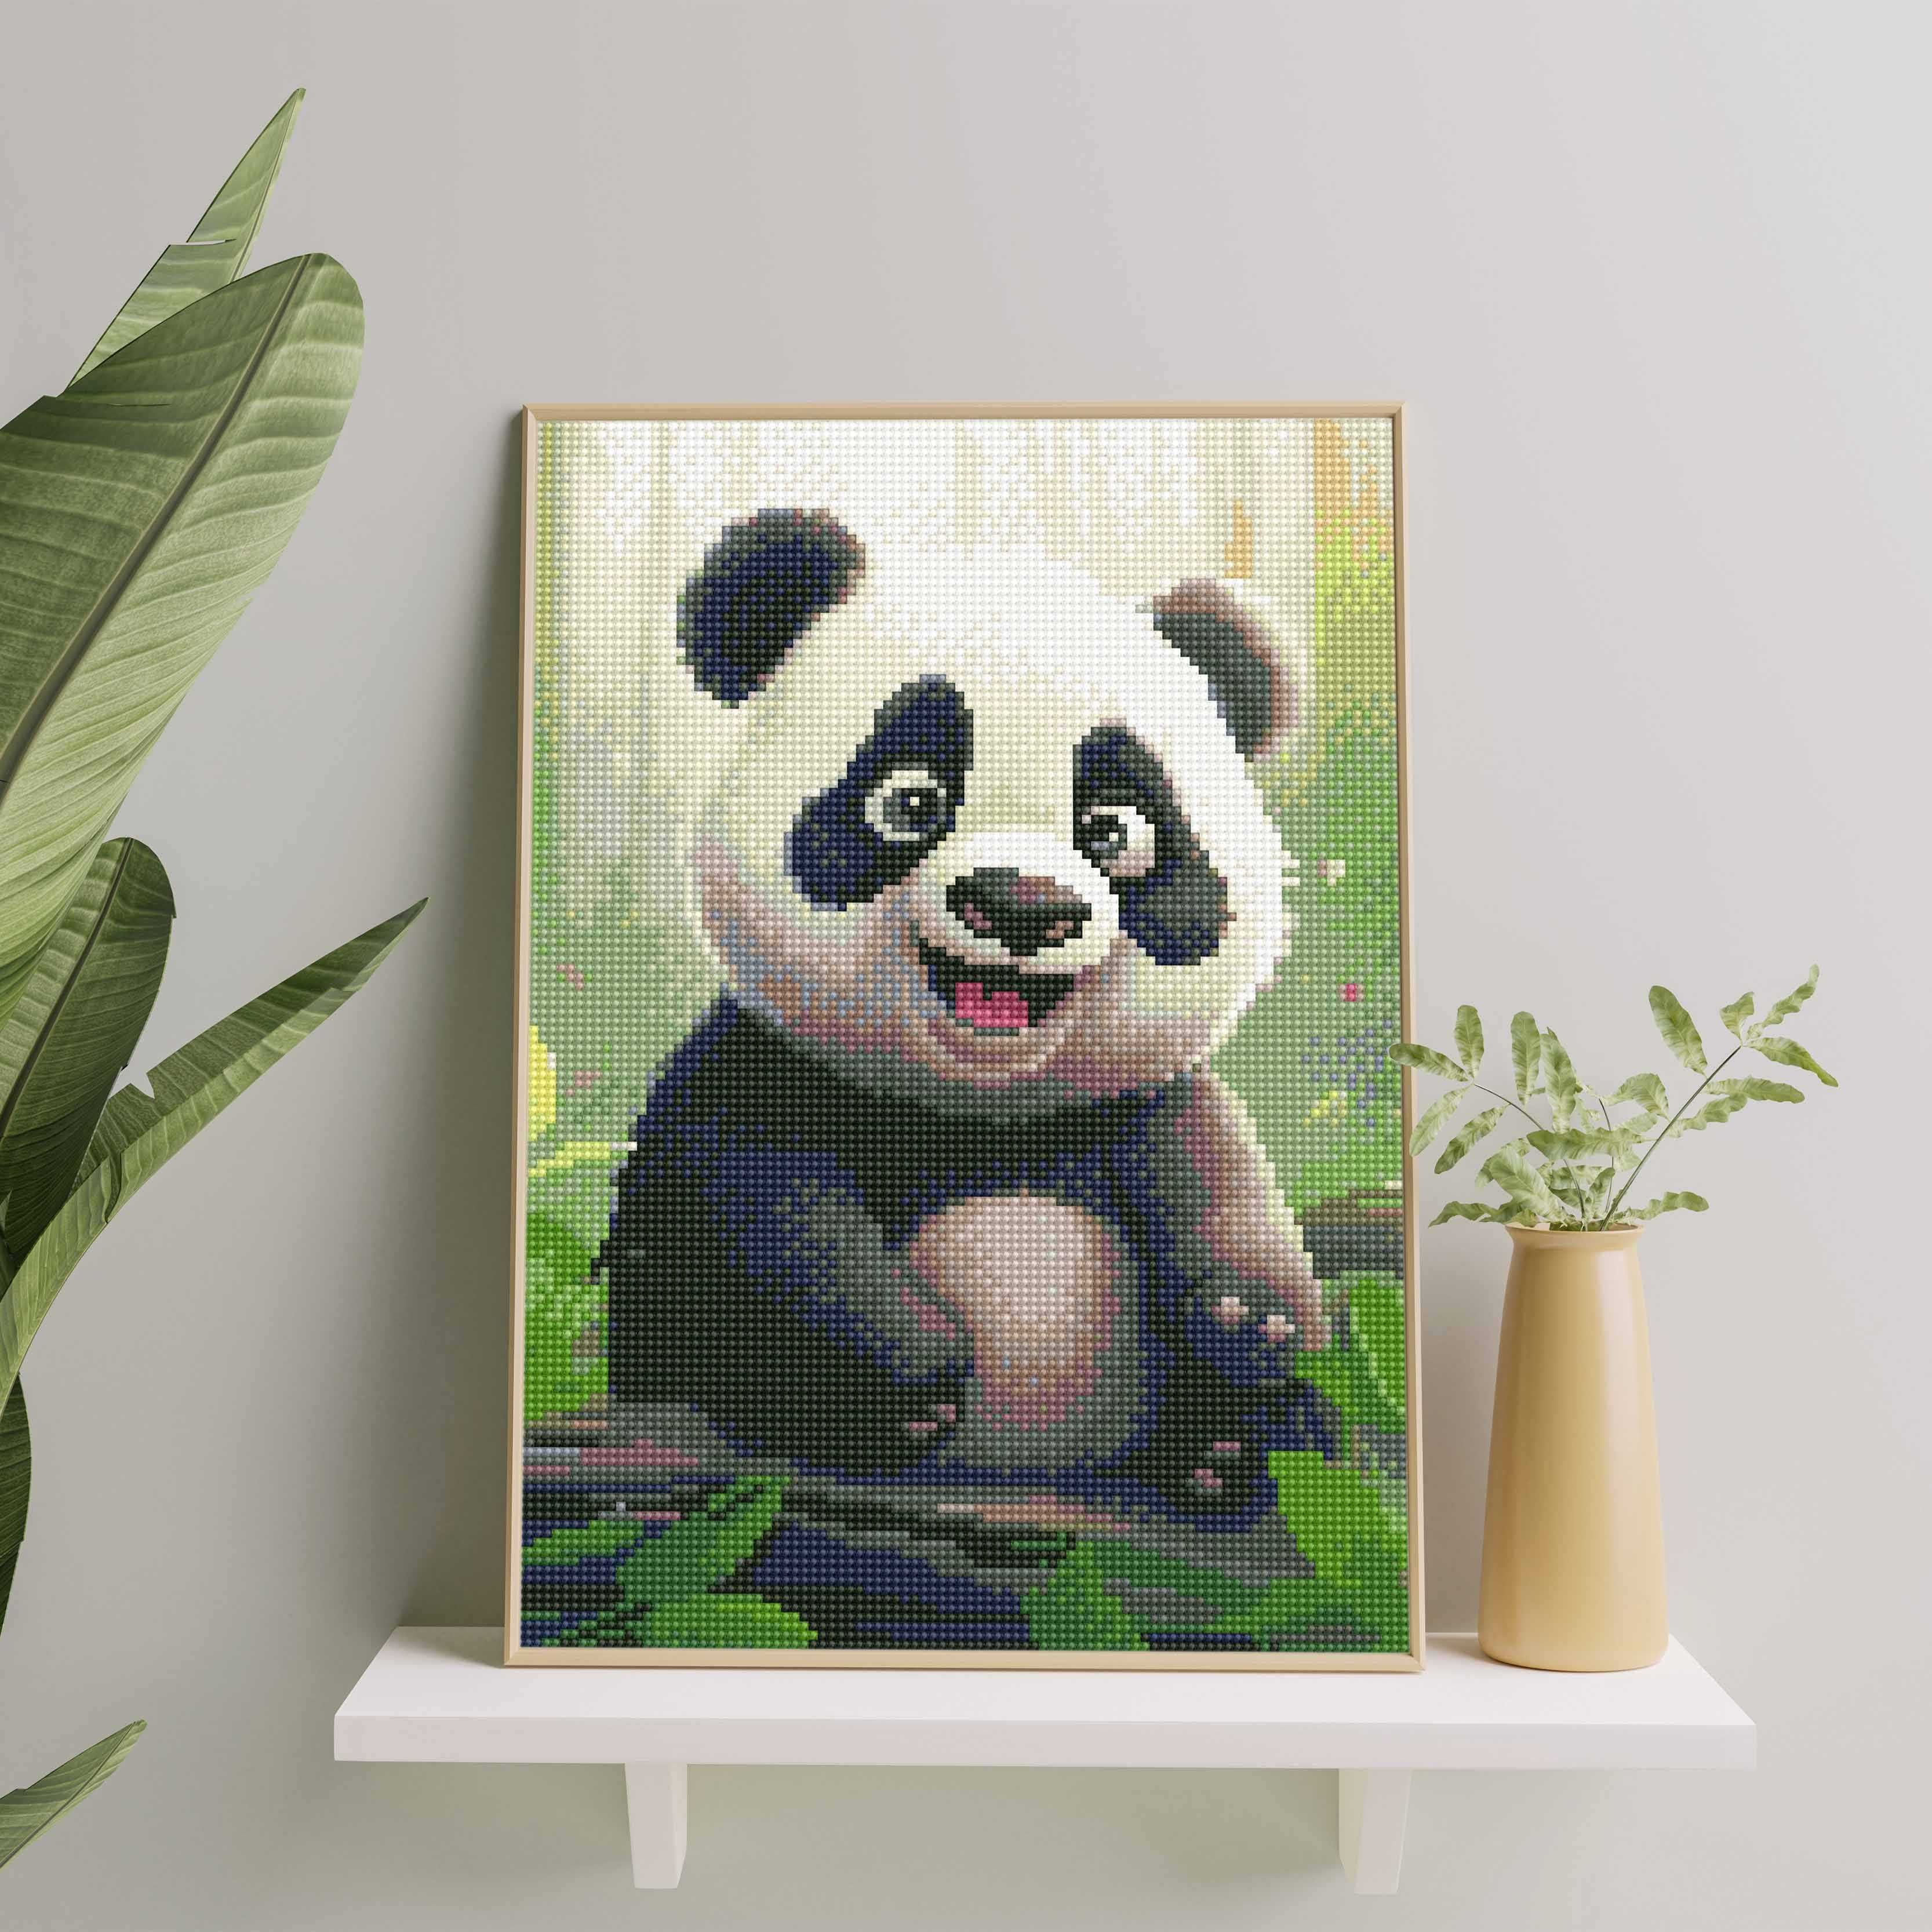 Haft Diamentowy Diamond Painting Mozaika - Mała panda / Oh Art